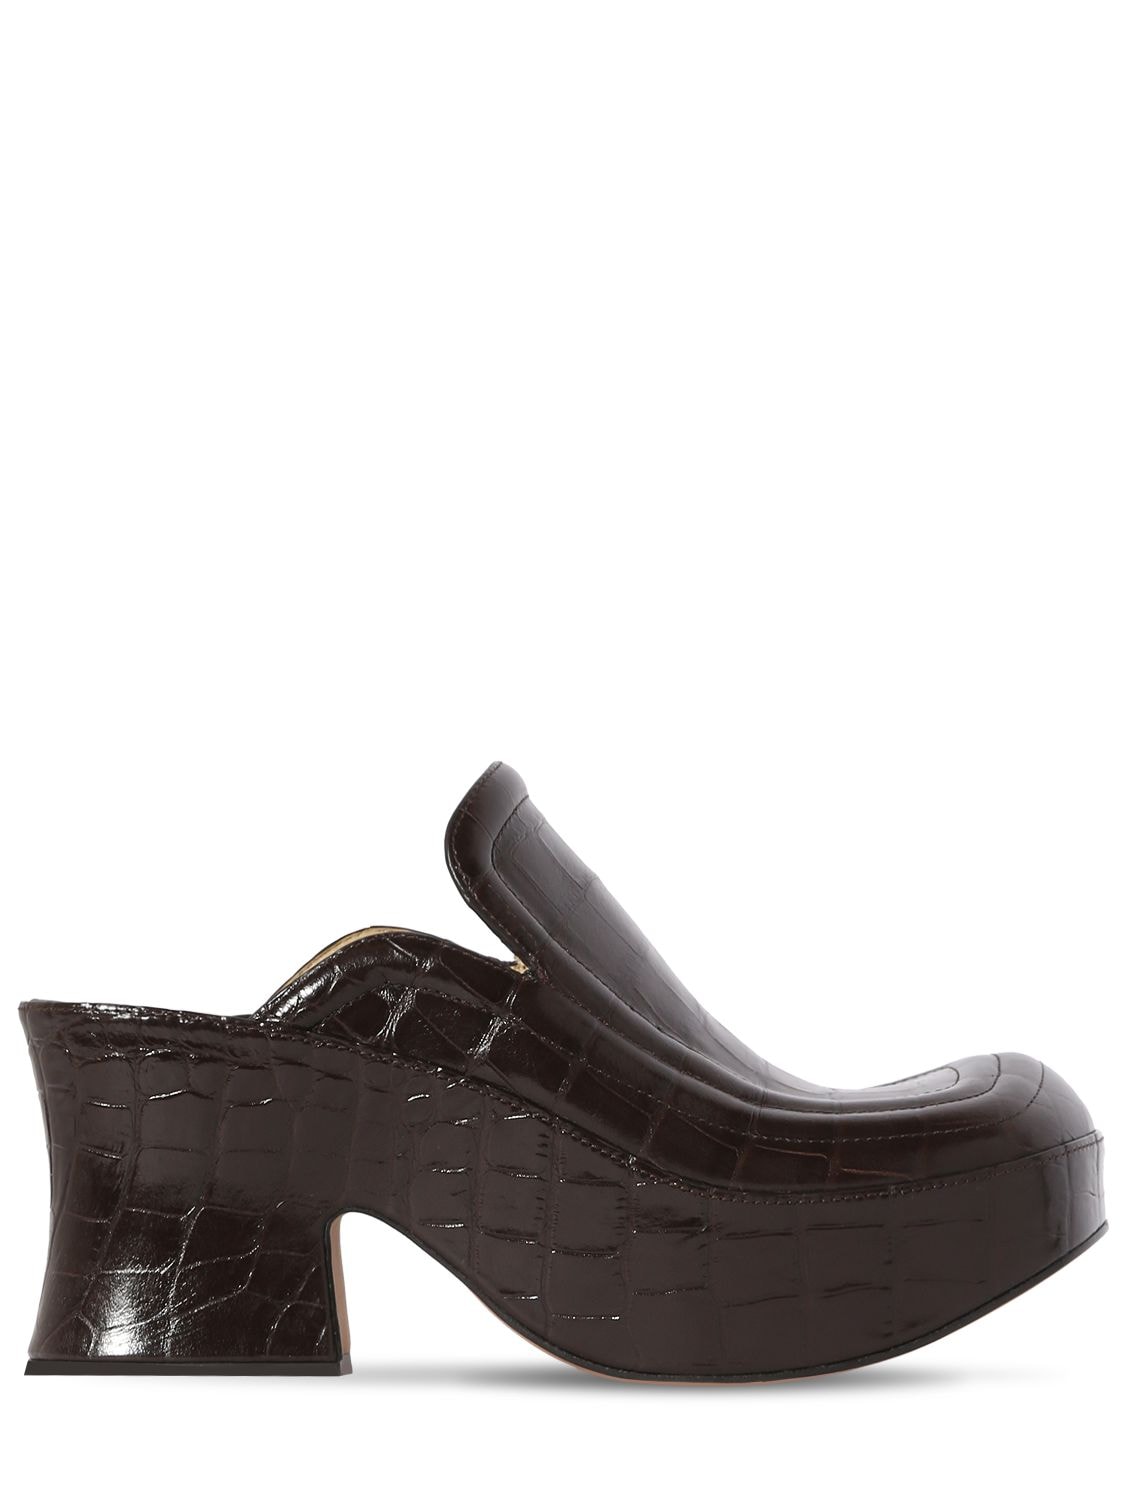 Mm Wedge Croc Embossed Leather Mules - BOTTEGA VENETA - Modalova